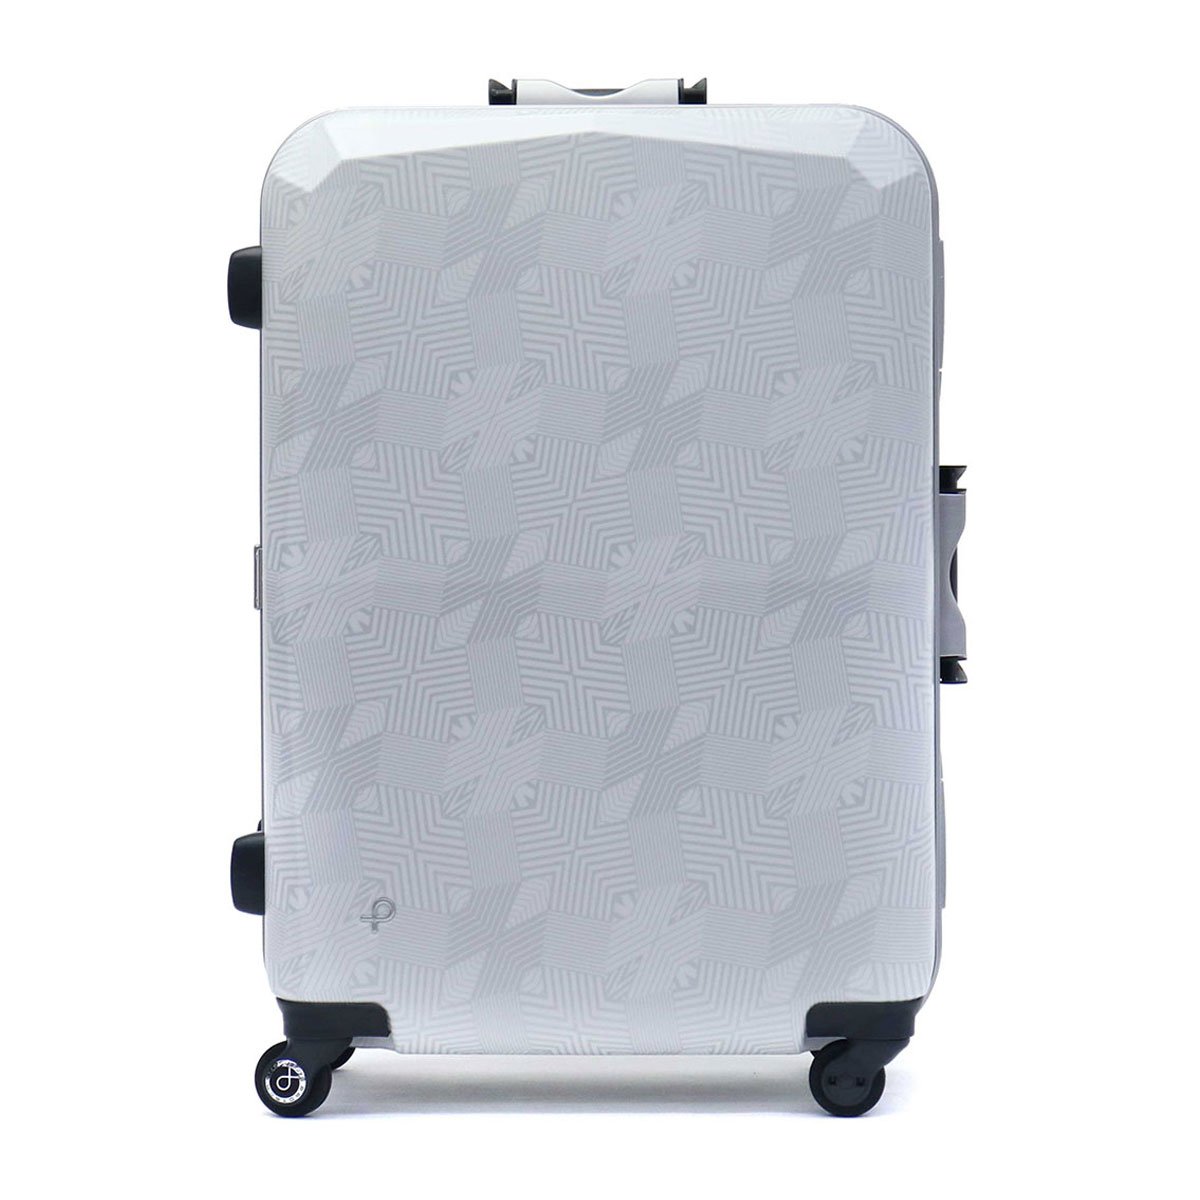 新品未使用Proteca エキノックスライトα スーツケース 66cm96l - バッグ